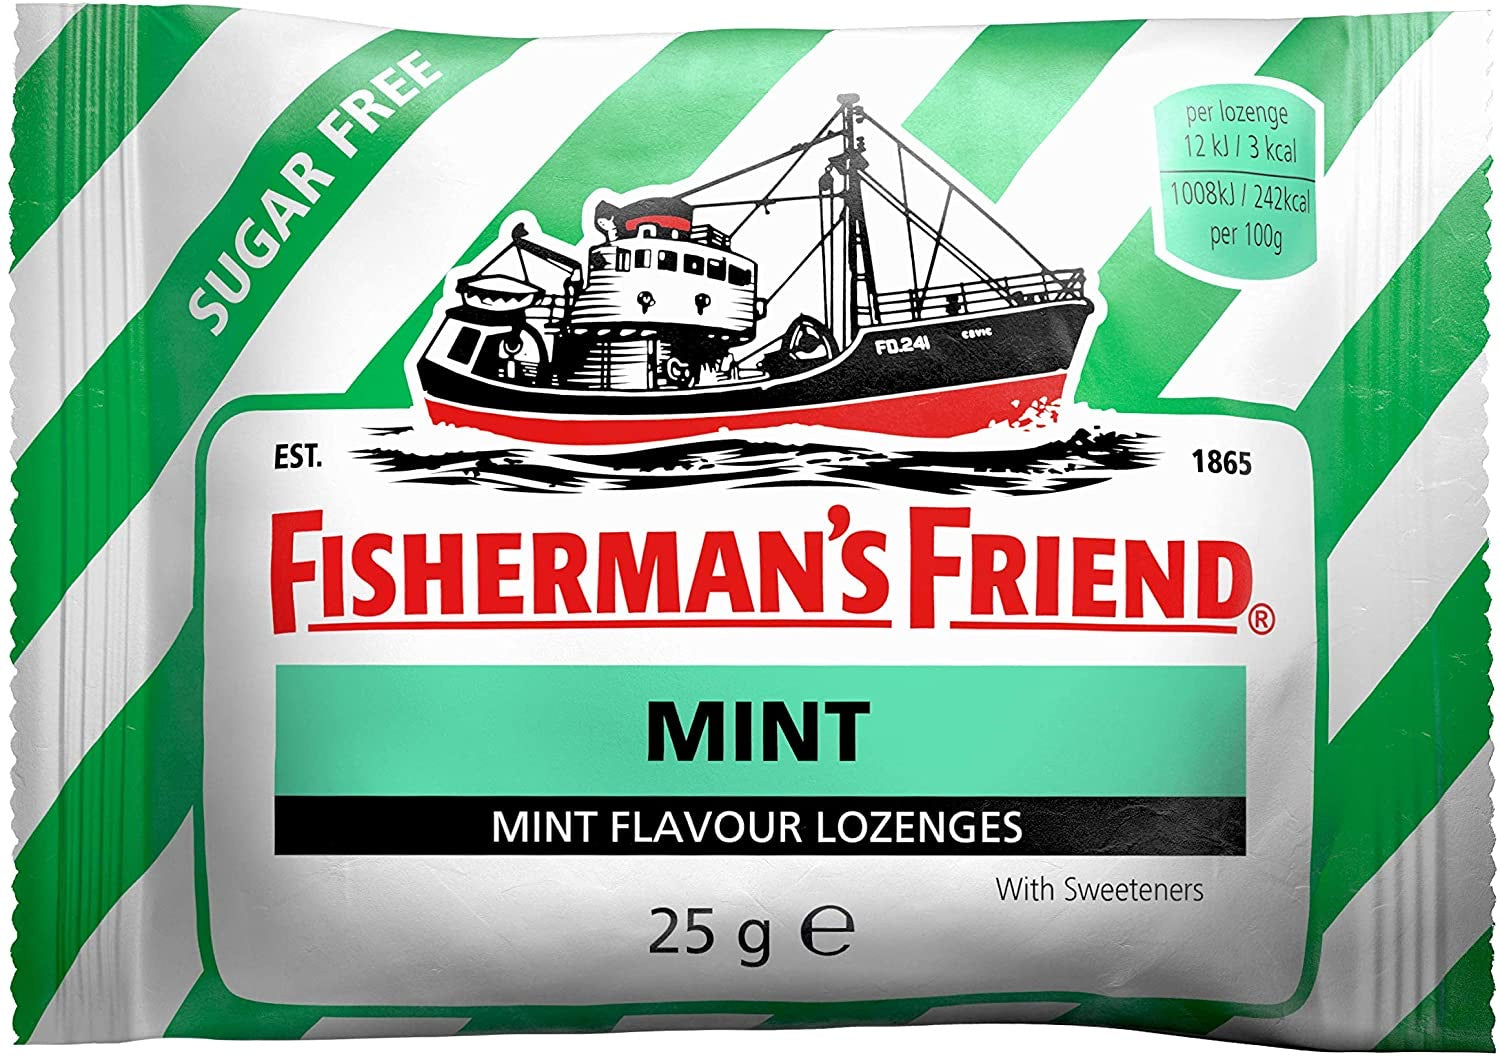 FISHERMAN'S FRIEND LOZ MINT